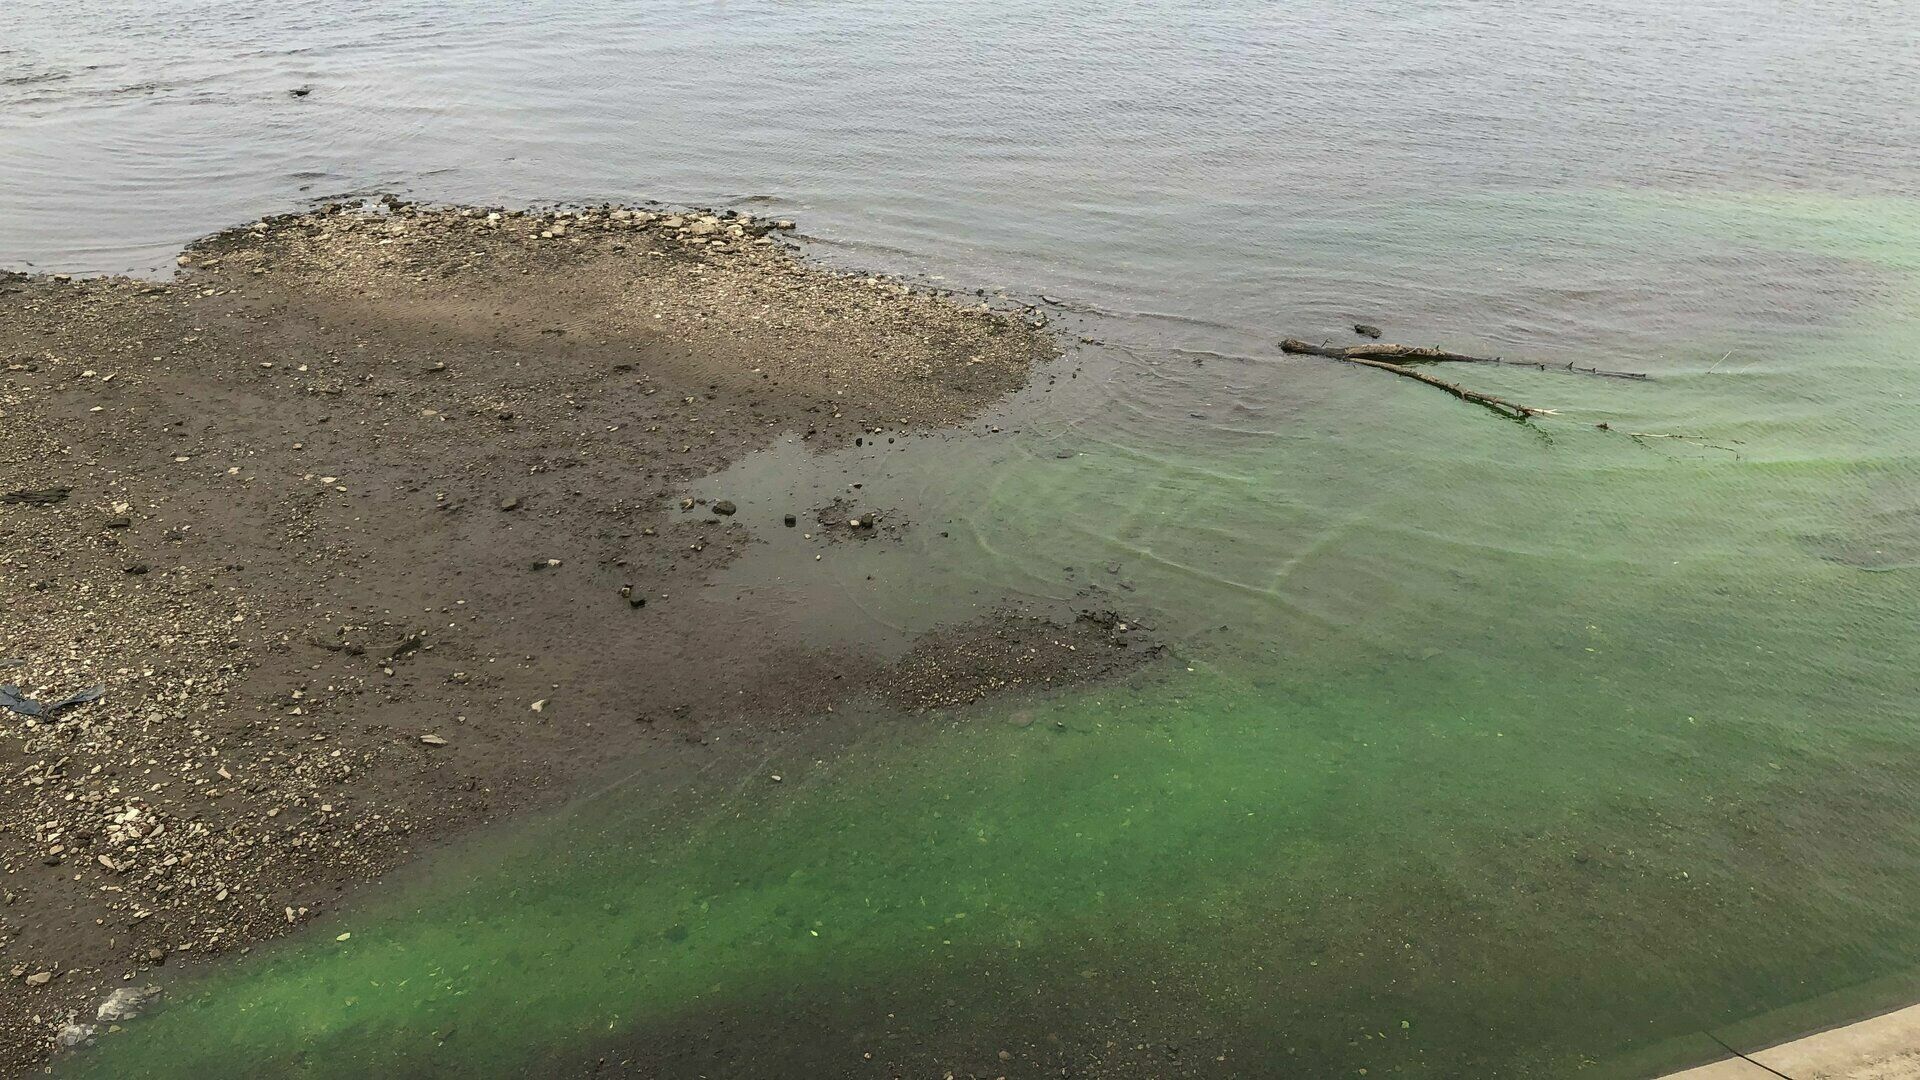 Природоохранная прокуратура обещала проверить зеленые реки в Перми. Результатов все еще нет